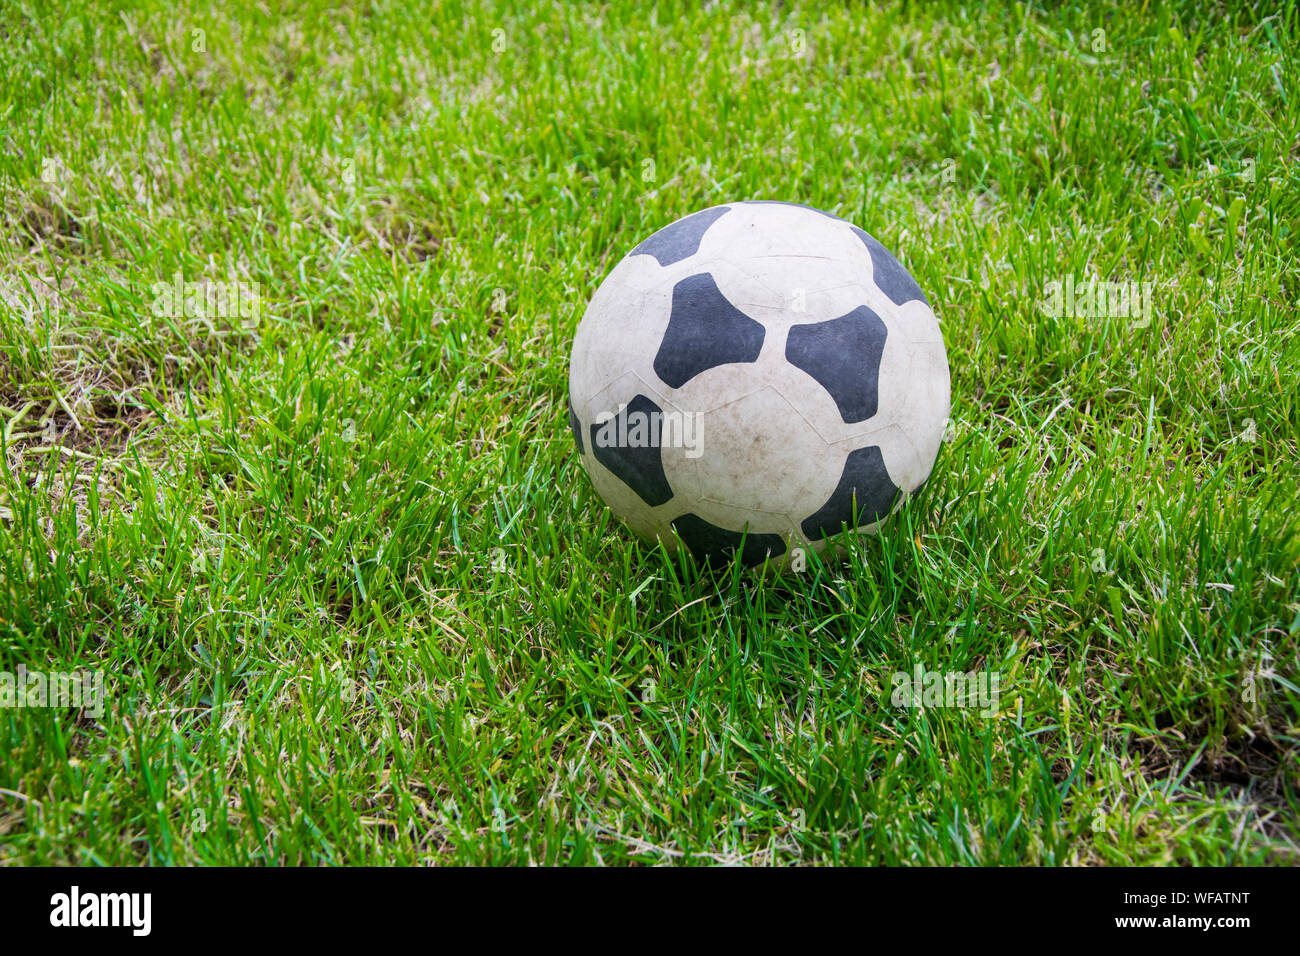 Ballon de soccer sur le terrain herbeux Banque D'Images